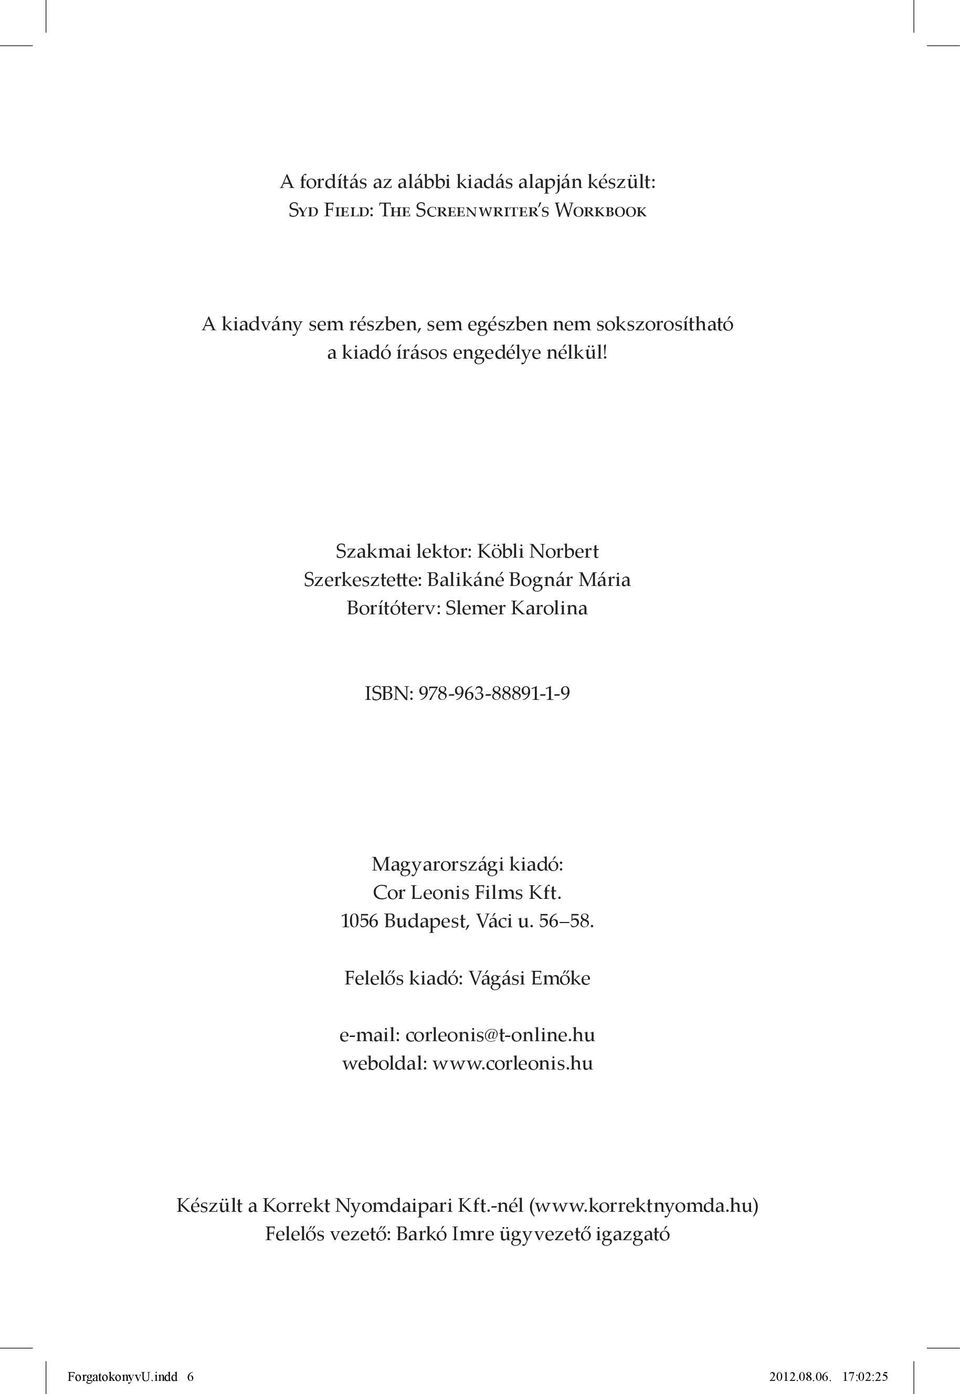 Szakmai lektor: Köbli Norbert Szerkesztette: Balikáné Bognár Mária Borítóterv: Slemer Karolina ISBN: 978-963-88891-1-9 Magyarországi kiadó: Cor